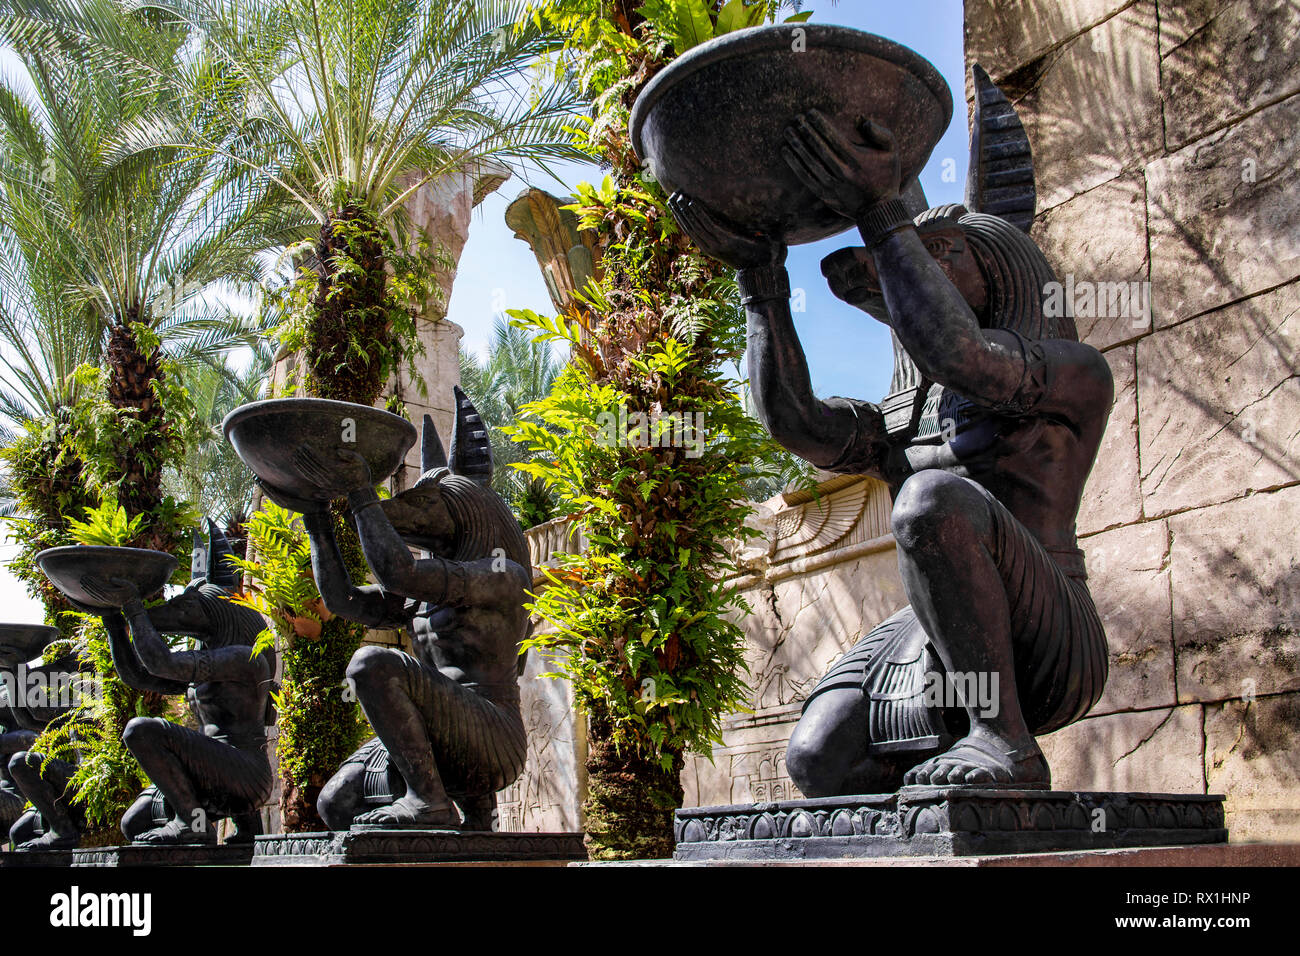 Callejón con grandes estatuas de piedra idéntica del dios egipcio Anubis, quien se halla en una rodilla y sostiene un cuenco redondo en sus manos. Las palmeras crecen entre th Foto de stock